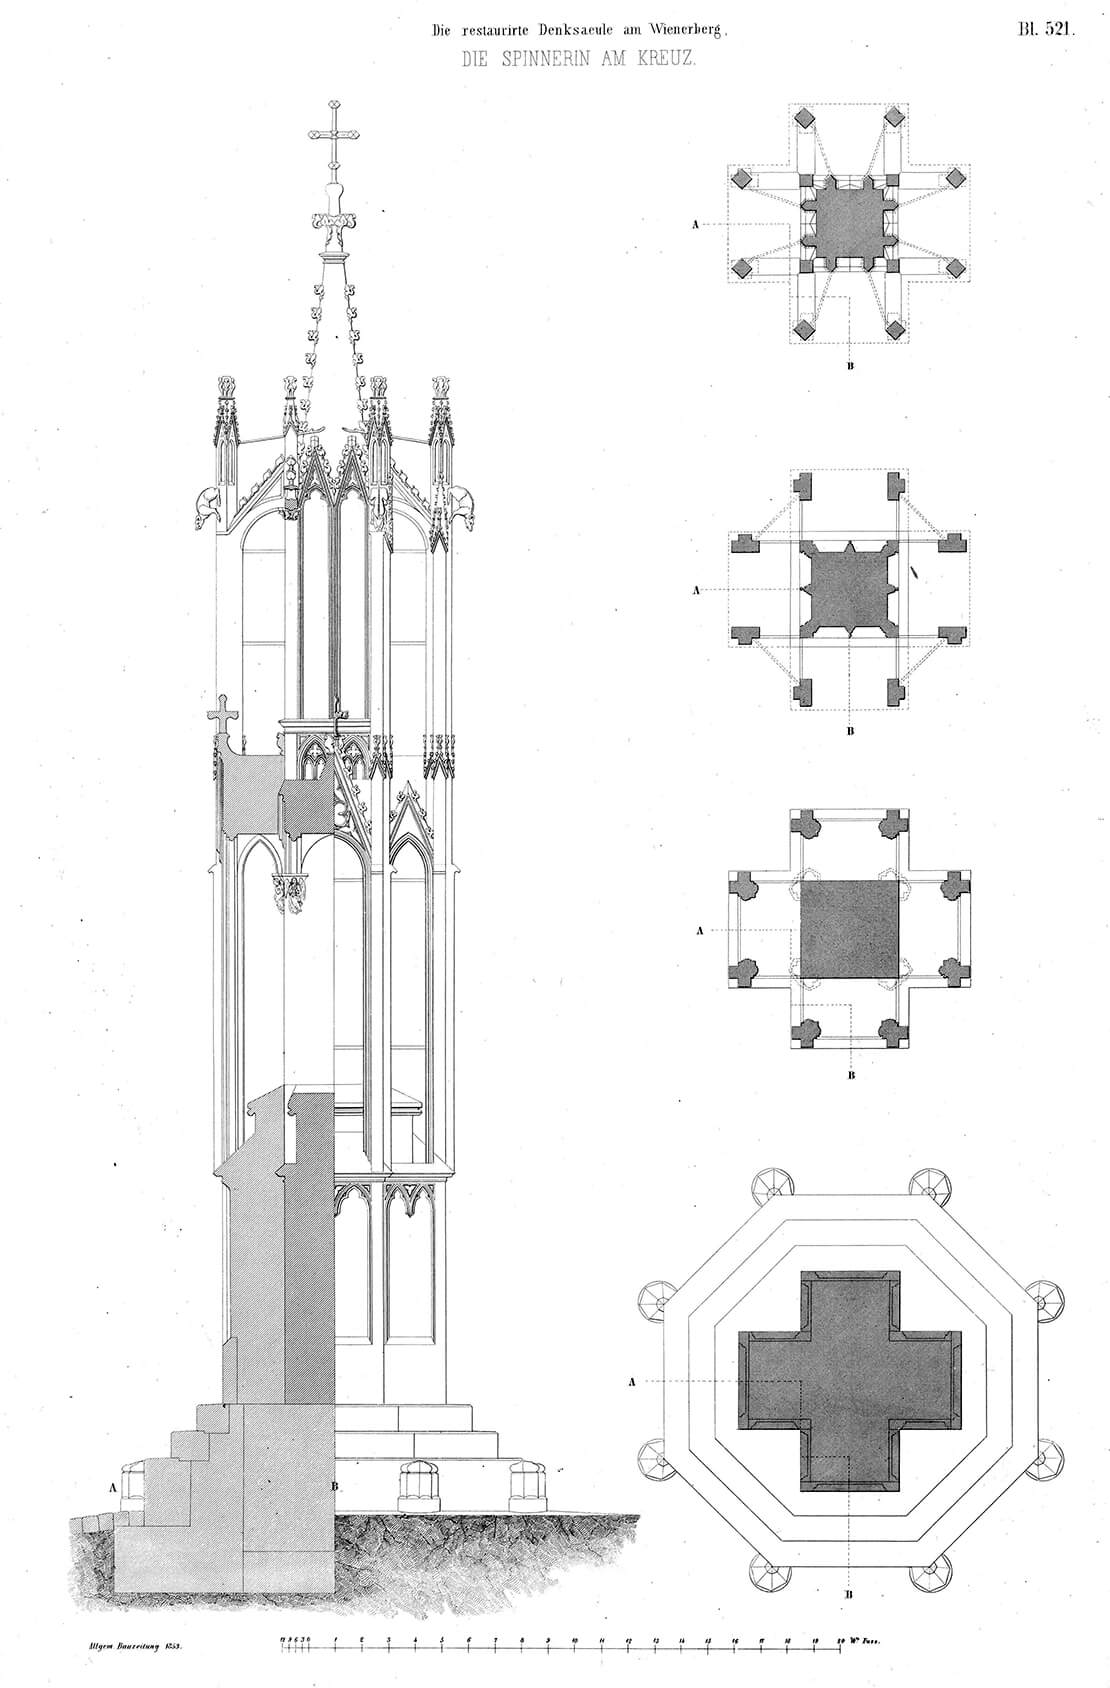 Der Aufbau der Spinnerin am Kreuz, aufgenommen nach der Restaurierung von 1852, aus: Allgemeine Bauzeitung, 18. Jg., 1853, Blatt 521 (Quelle: ÖNB, Anno) 